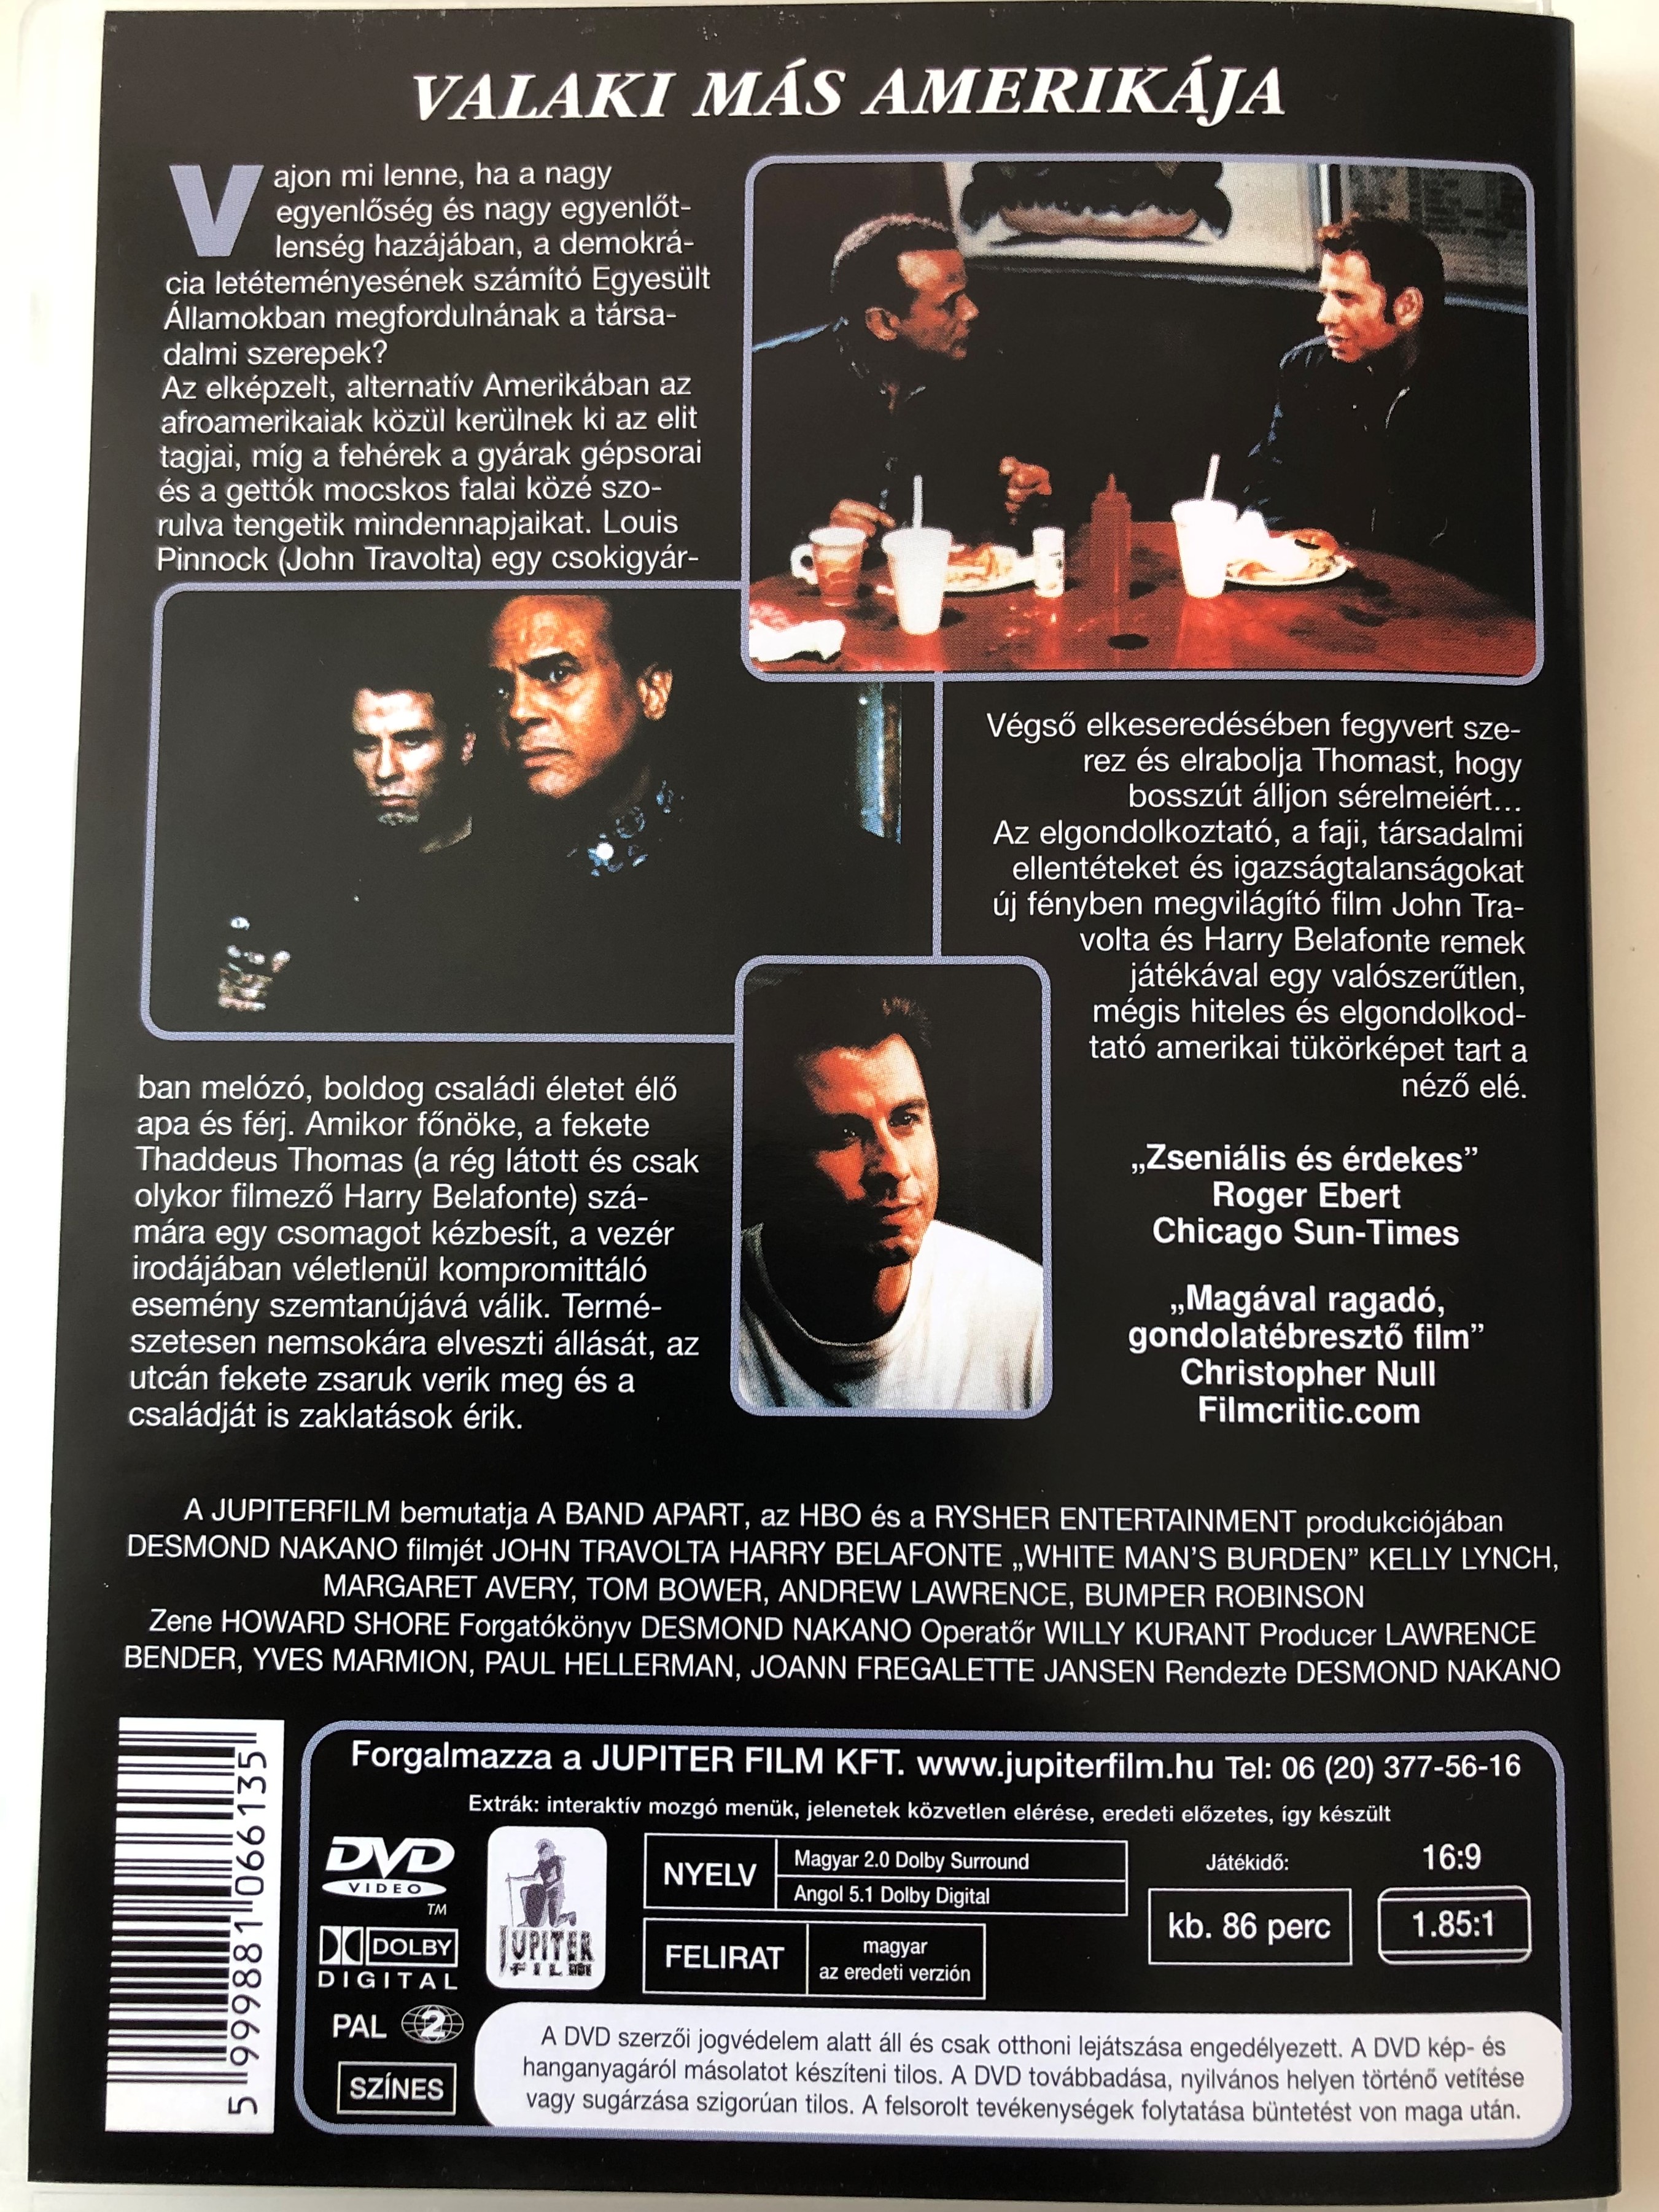 white-man-s-burden-dvd-1995-fekete-amerika-2.jpg